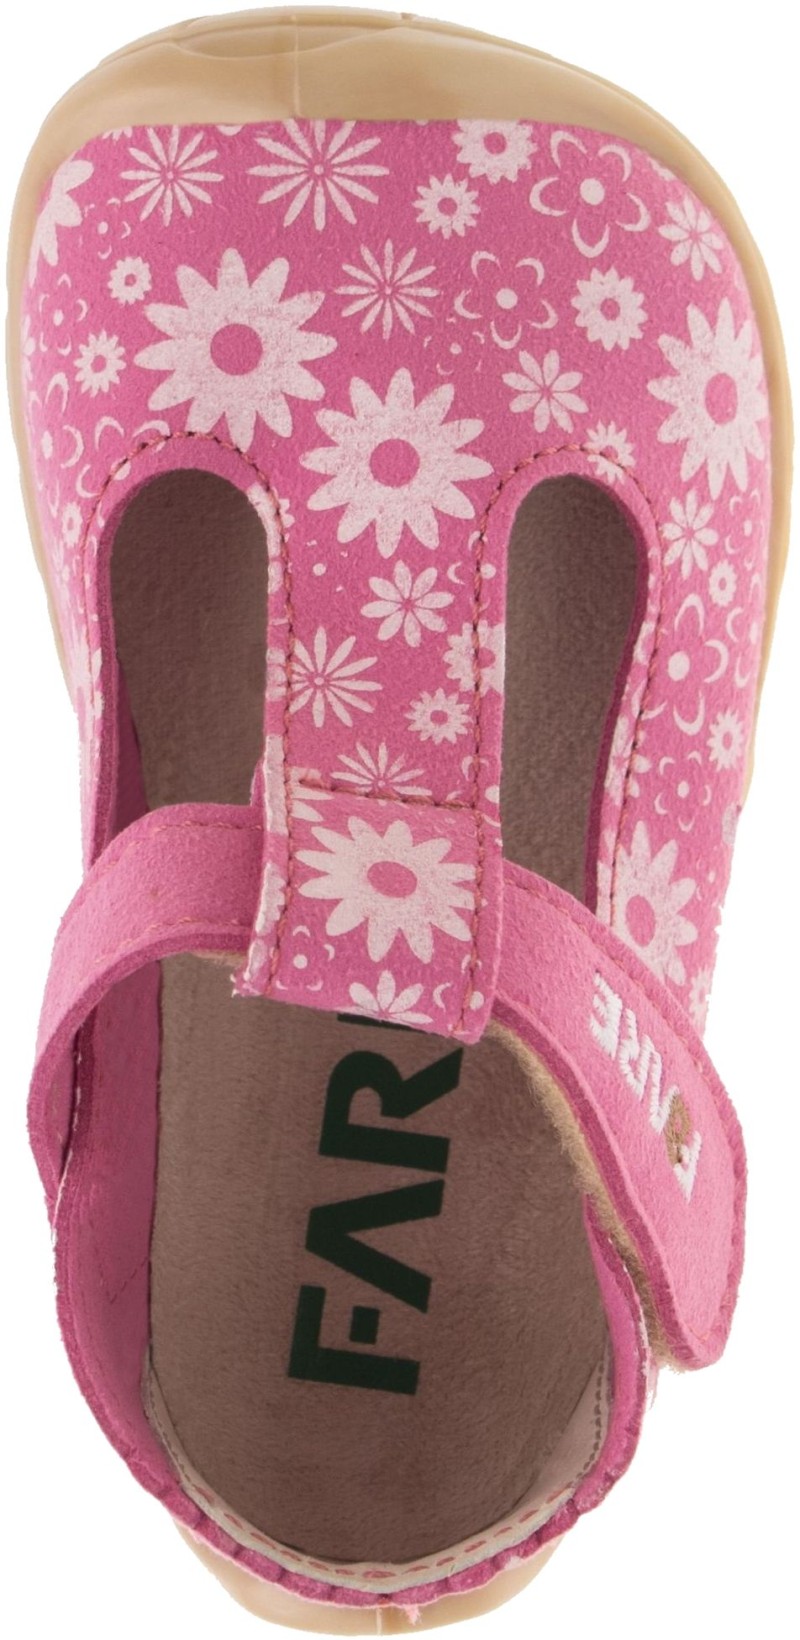 Fare Bare kingad, lilled-roosa Laste barefoot jalatsid - HellyK - Kvaliteetsed lasteriided, villariided, barefoot jalatsid